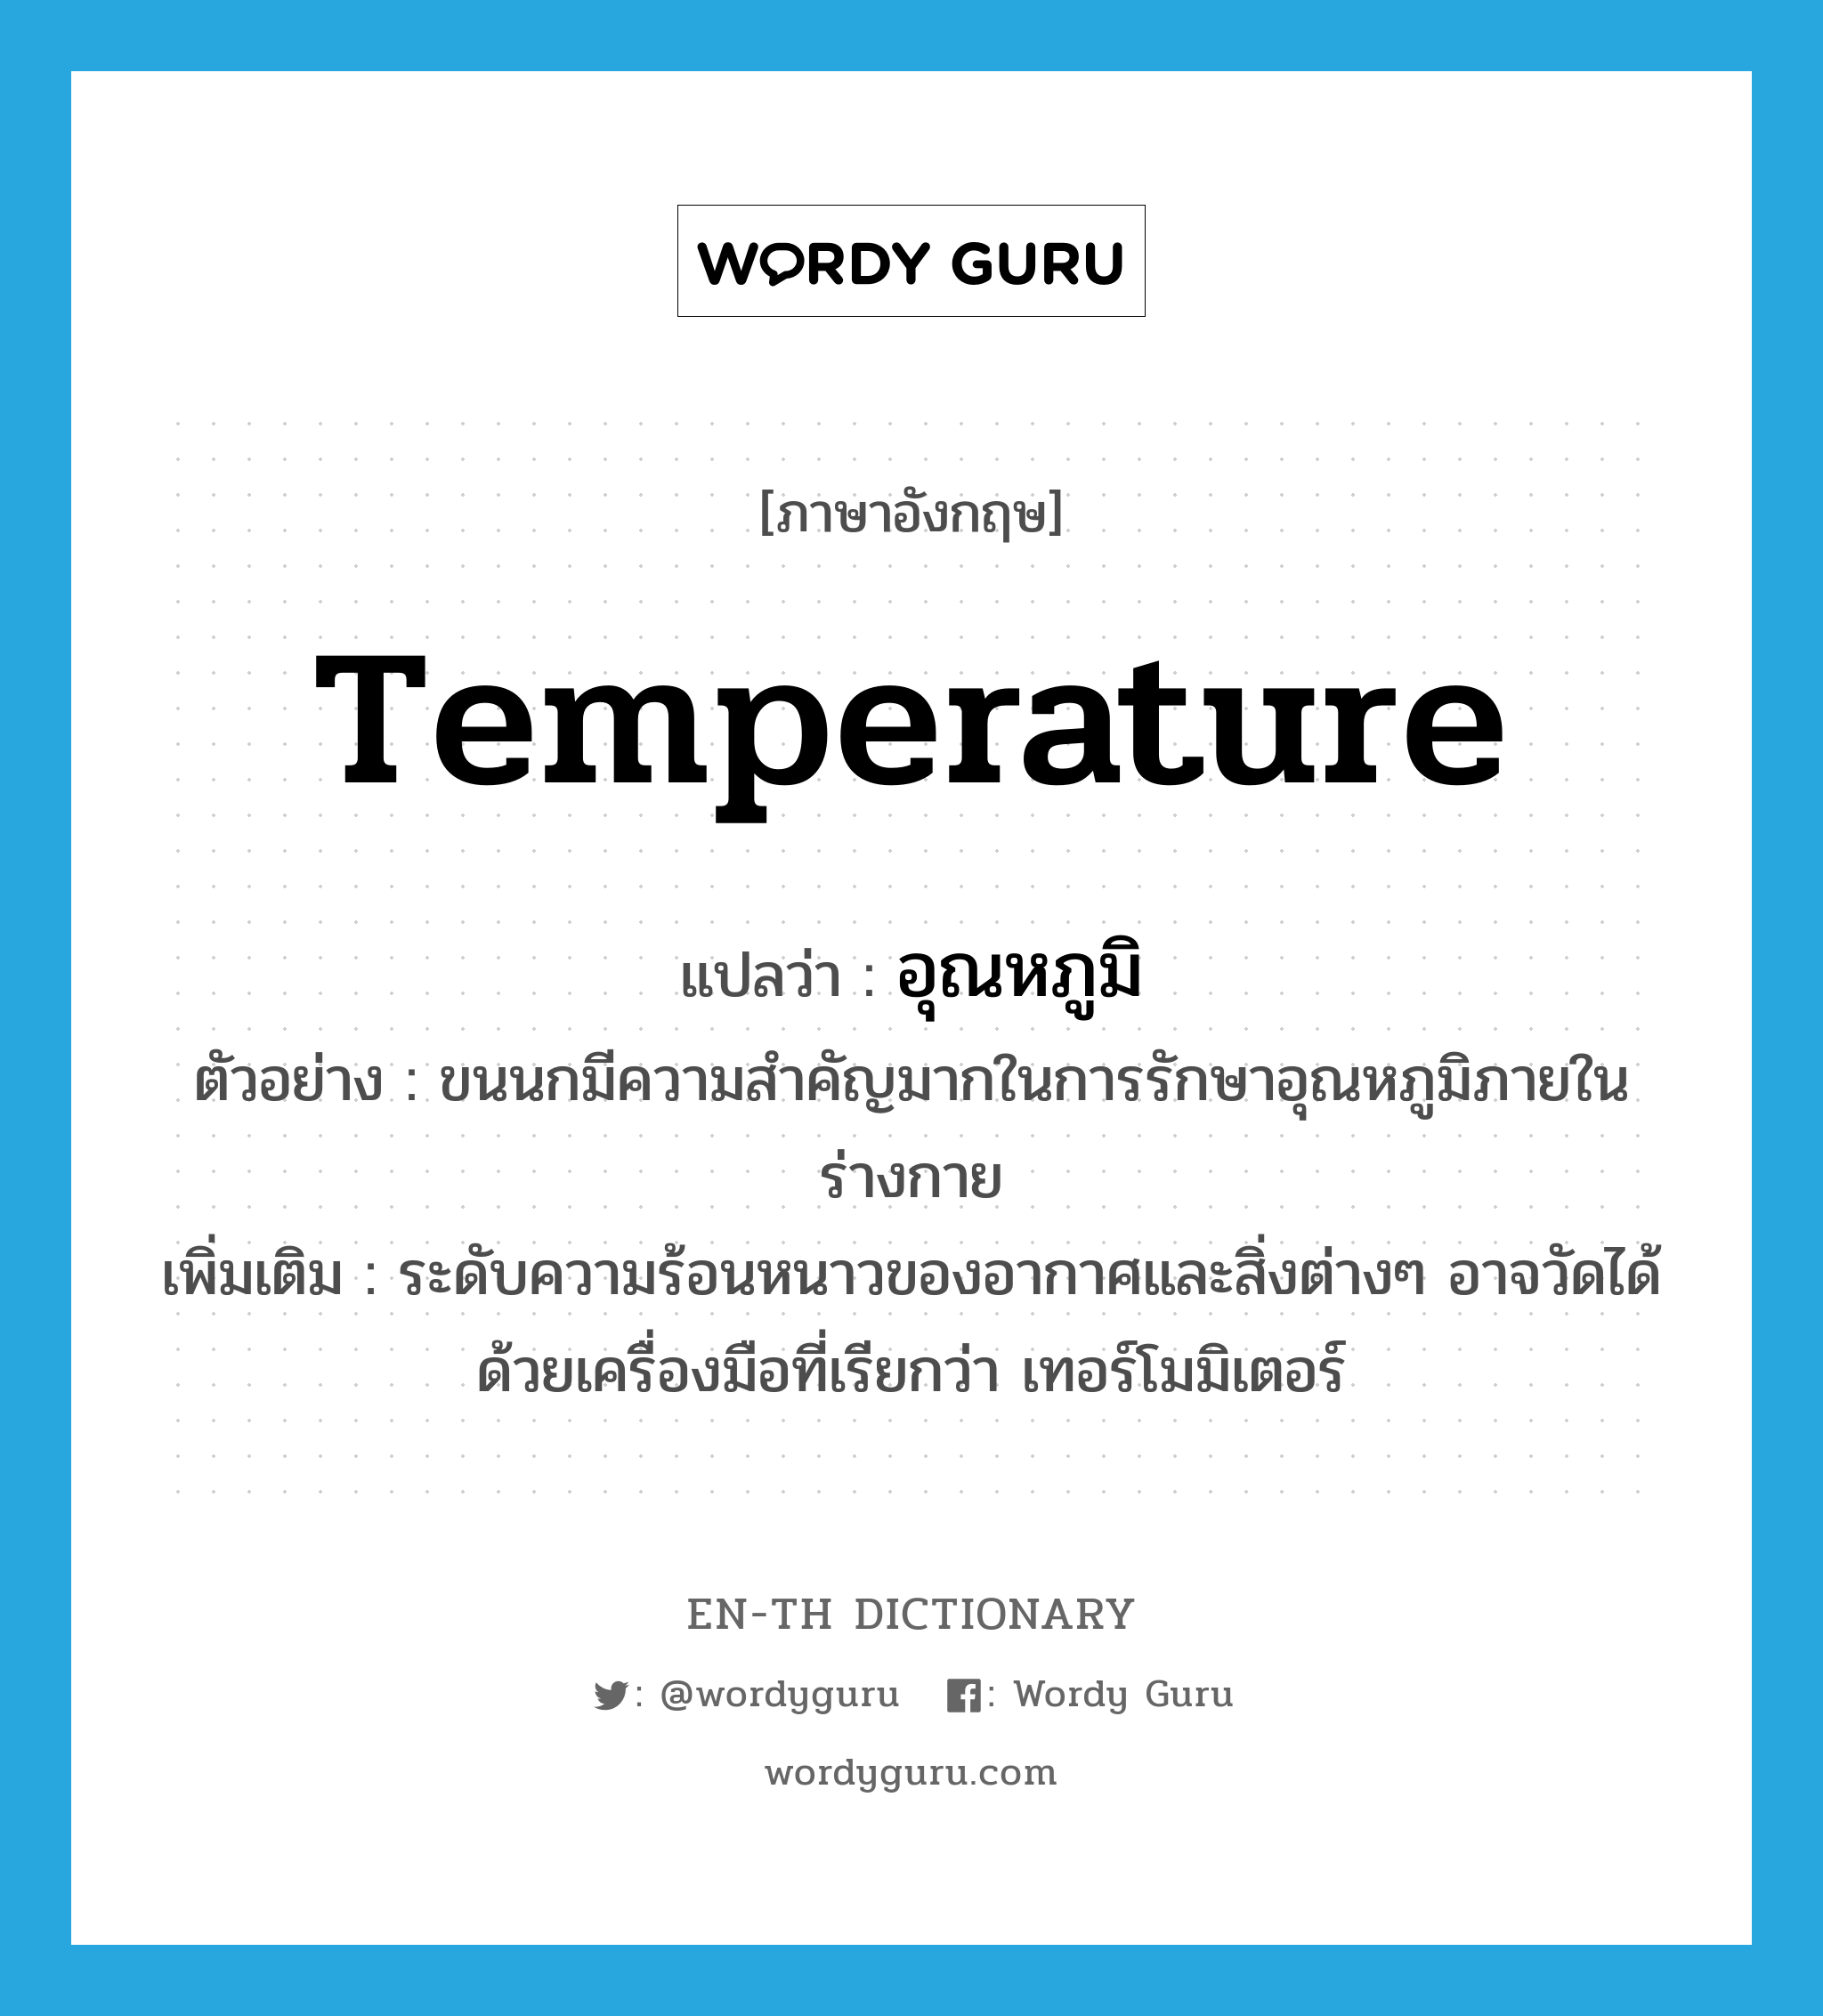 อุณหภูมิ ภาษาอังกฤษ?, คำศัพท์ภาษาอังกฤษ อุณหภูมิ แปลว่า temperature ประเภท N ตัวอย่าง ขนนกมีความสำคัญมากในการรักษาอุณหภูมิภายในร่างกาย เพิ่มเติม ระดับความร้อนหนาวของอากาศและสิ่งต่างๆ อาจวัดได้ด้วยเครื่องมือที่เรียกว่า เทอร์โมมิเตอร์ หมวด N